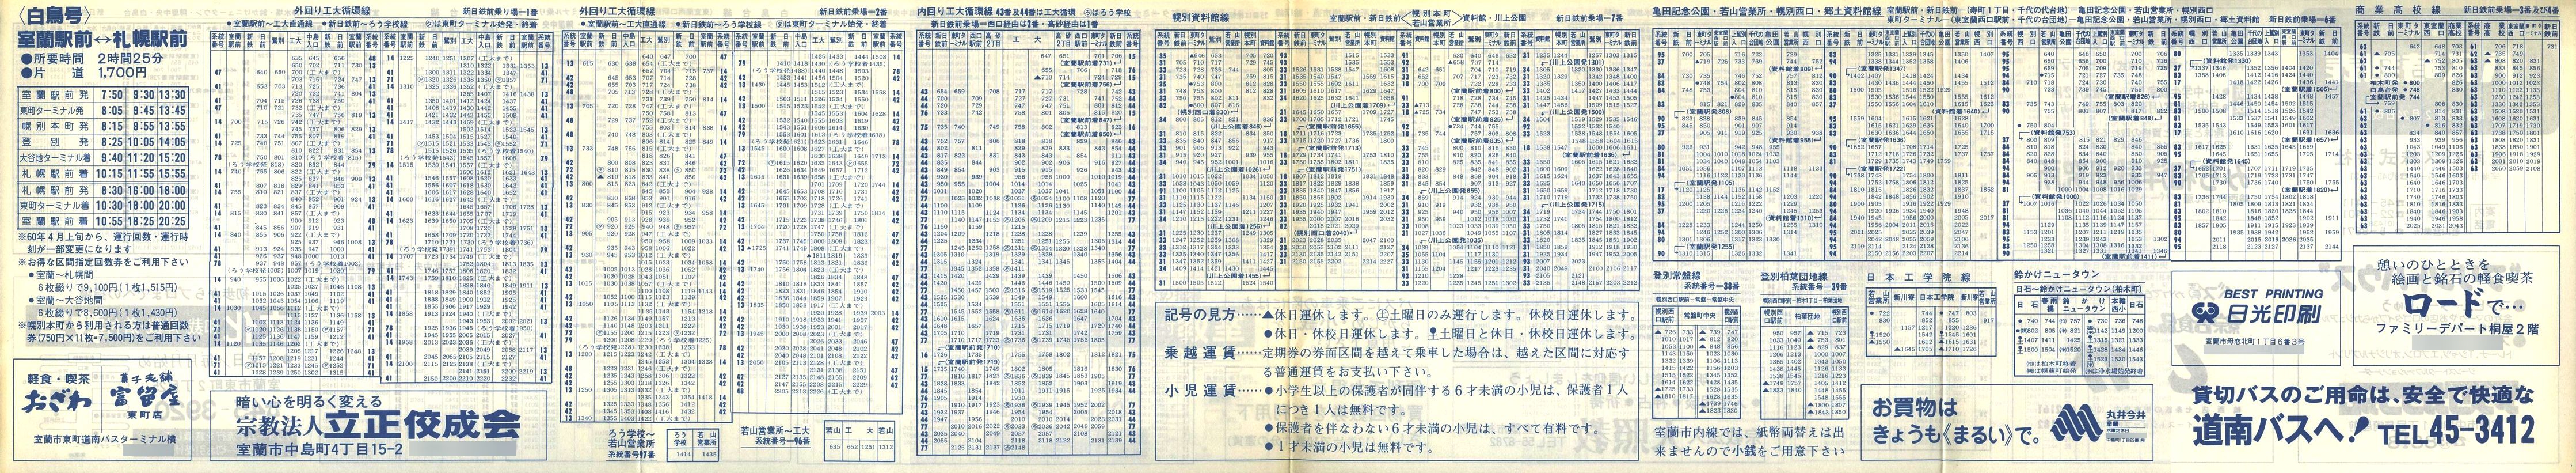 1985-02-24改正_道南バス_室蘭市内線時刻表裏面